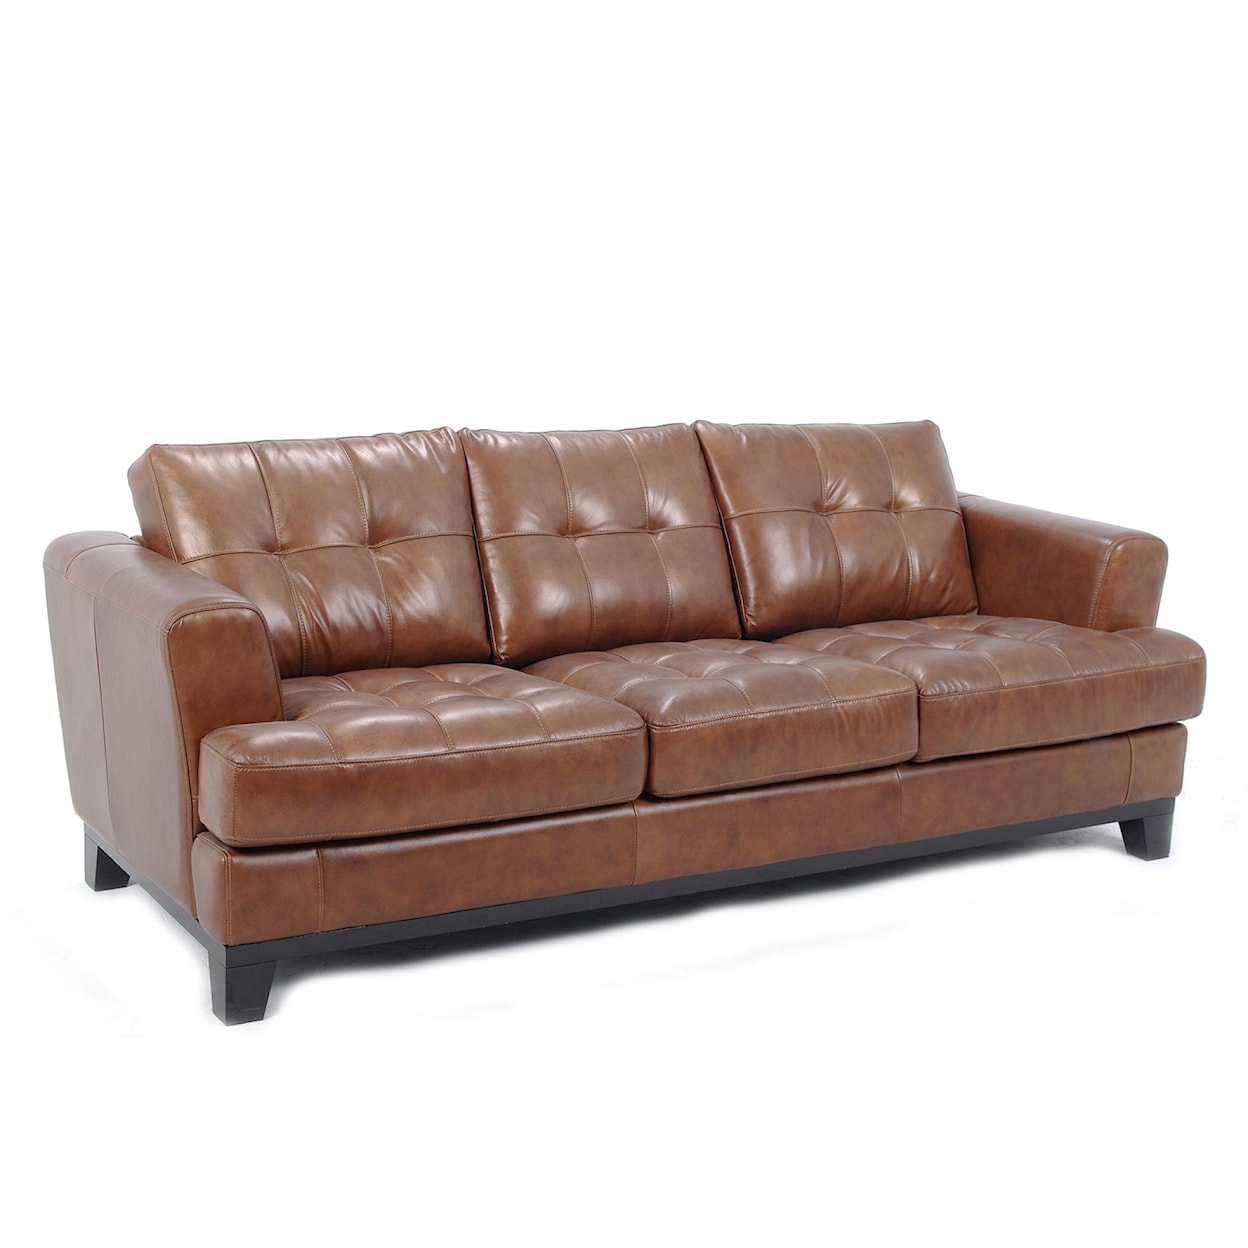 VFM Signature 8610 Tufted Leather Sofa